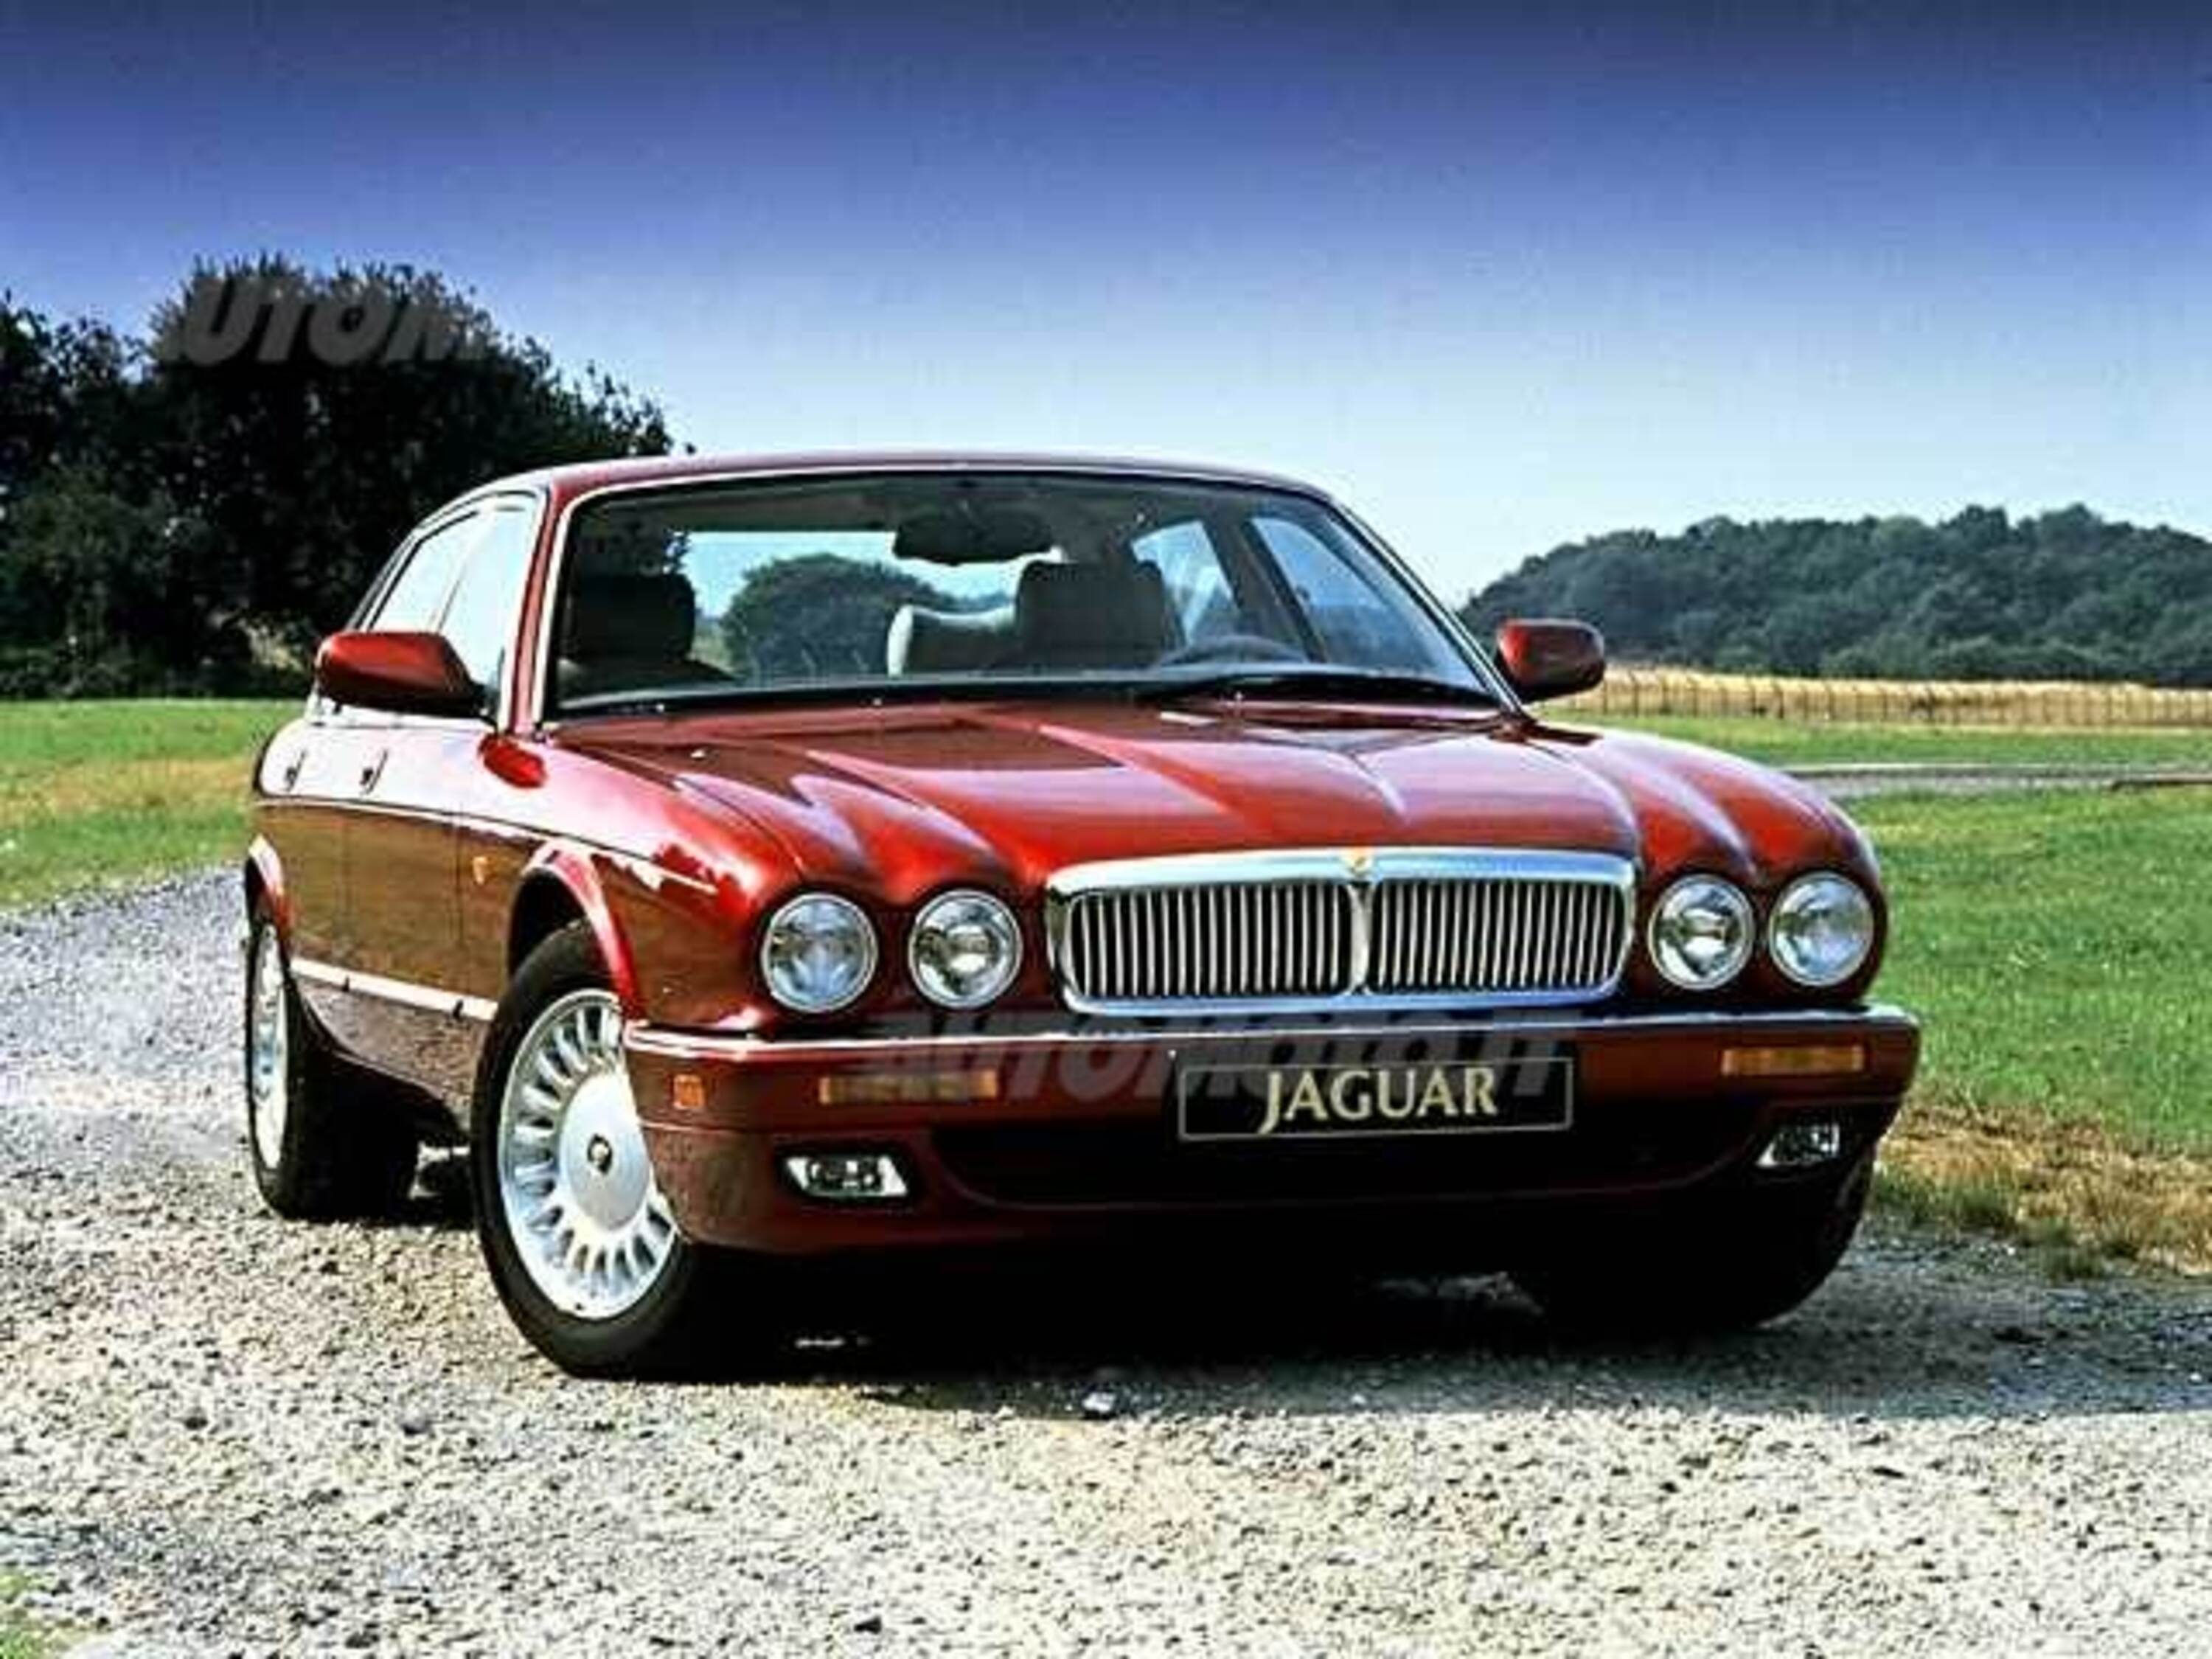 Jaguar XJ12 (1993-96)